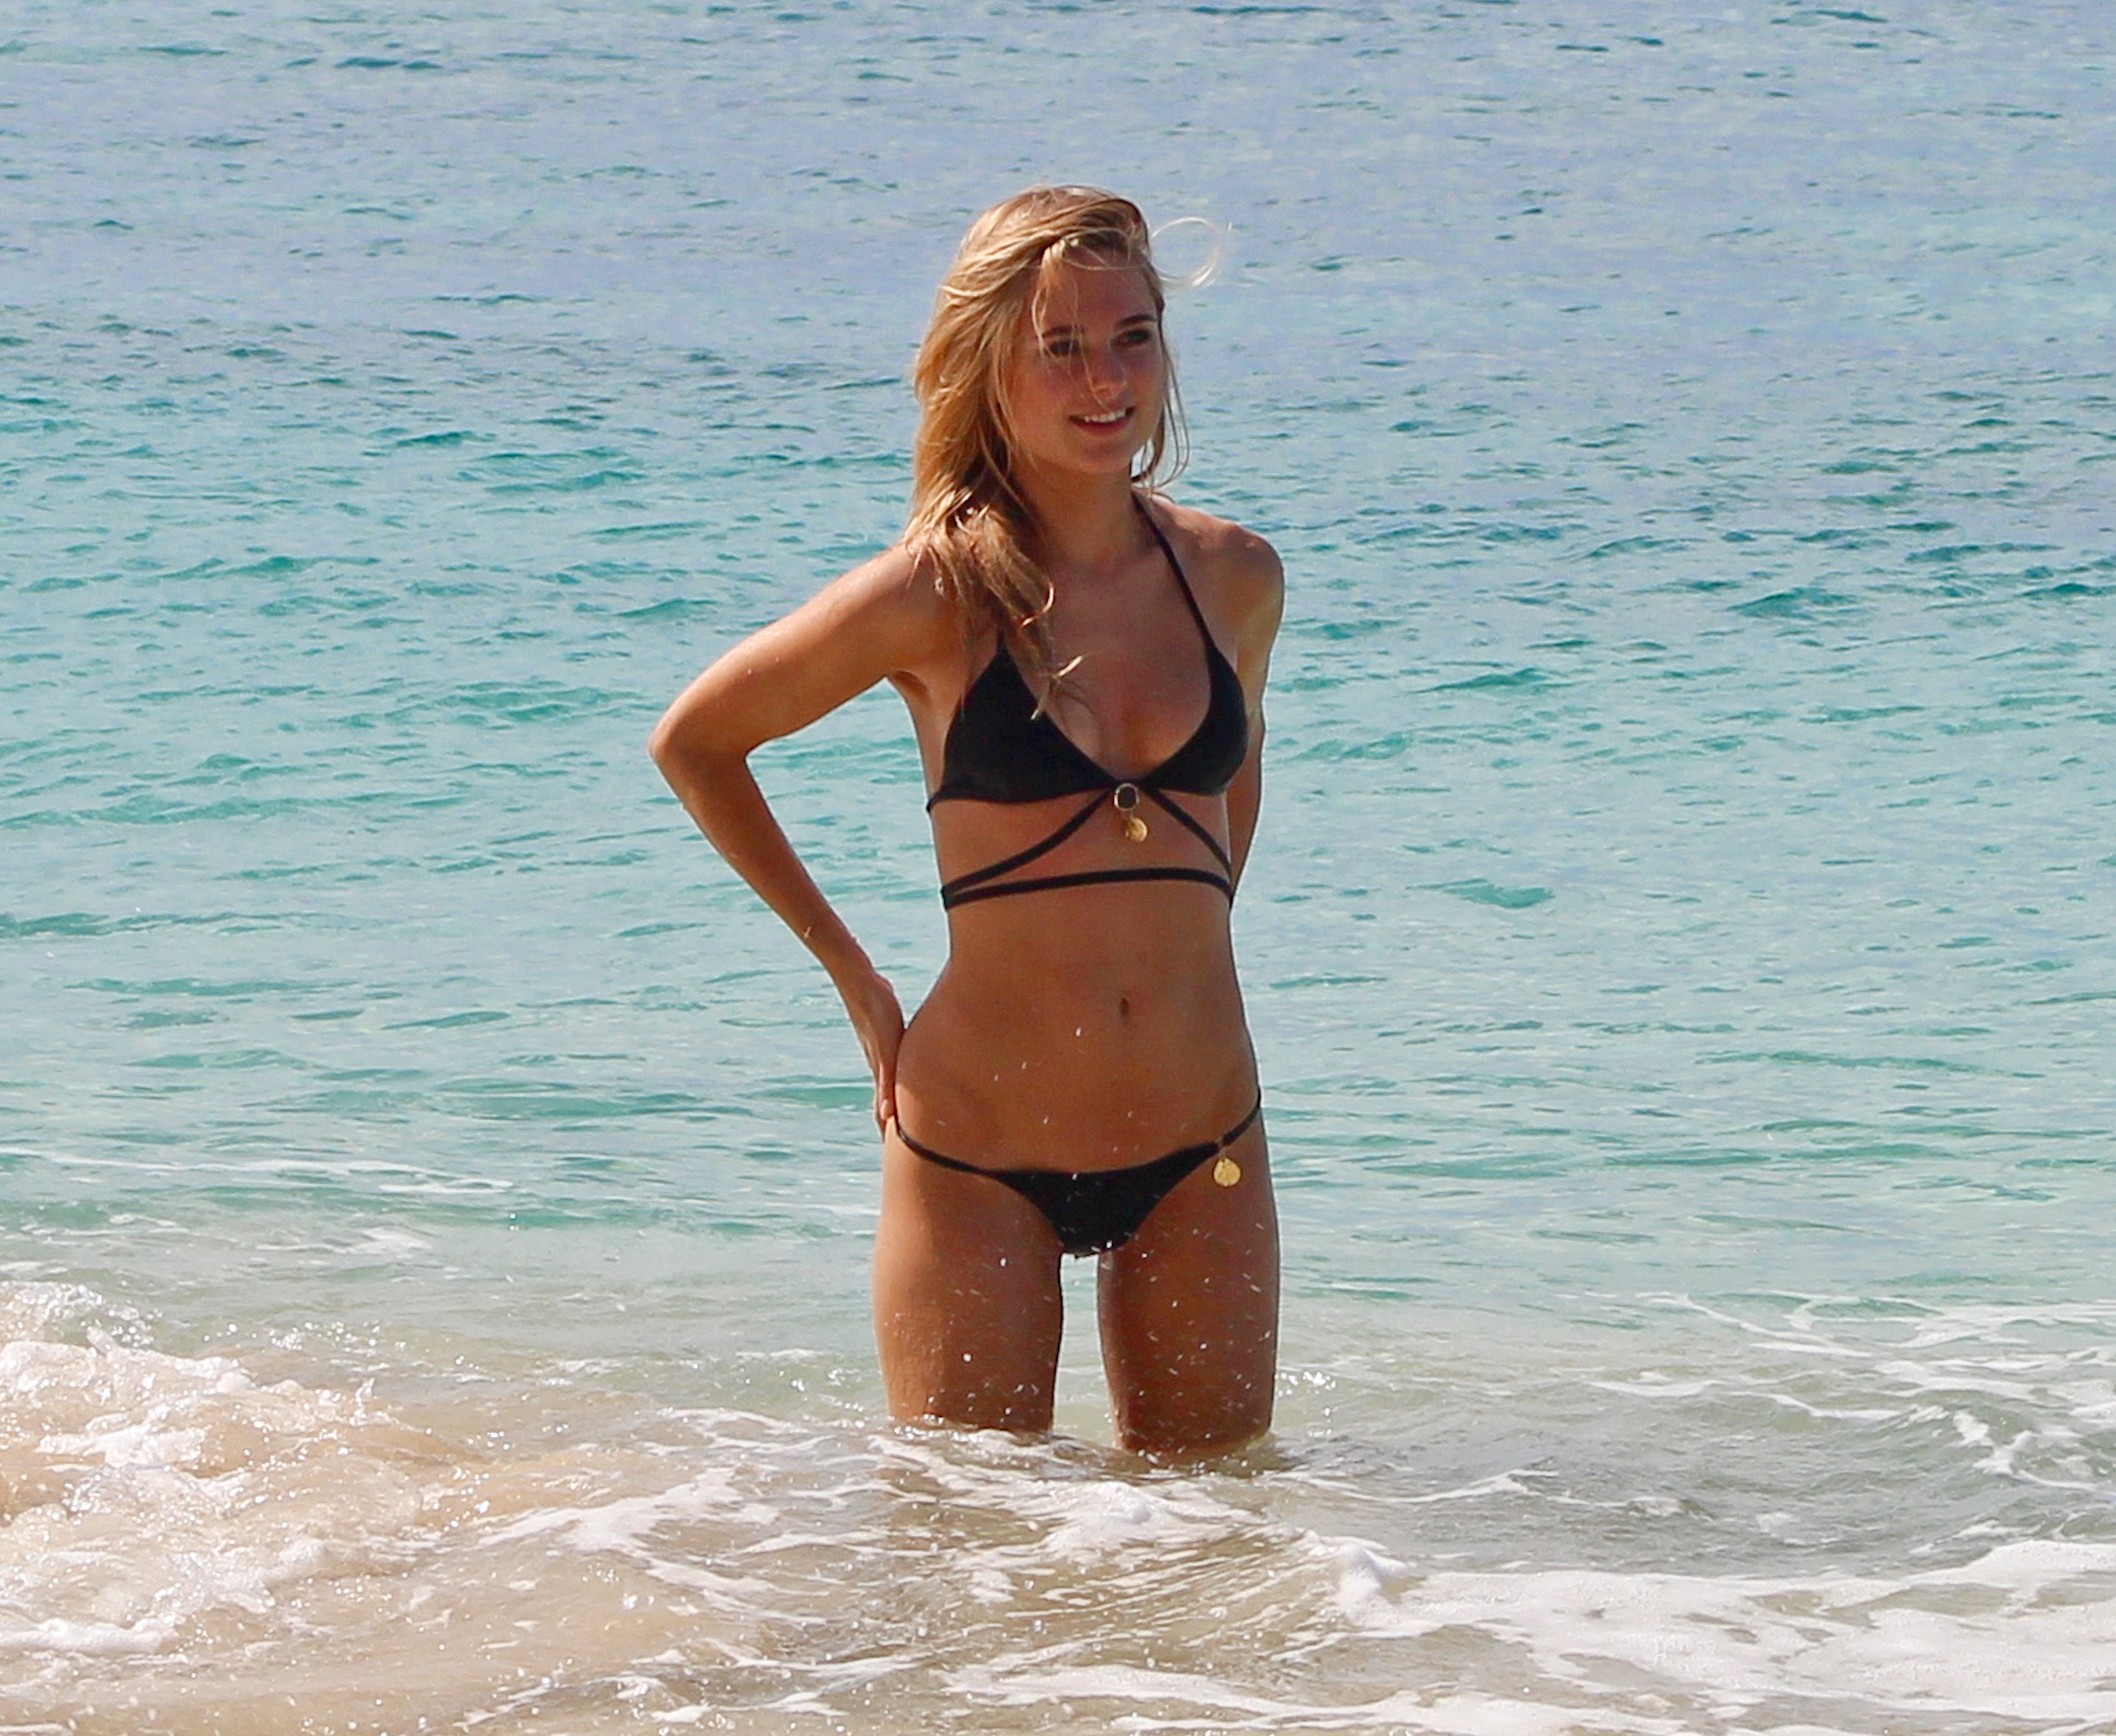 Kimberley_Garner_wearing_sexy_bikini_on_the_beach_in_Barbados_39x_HQ_5.jpg